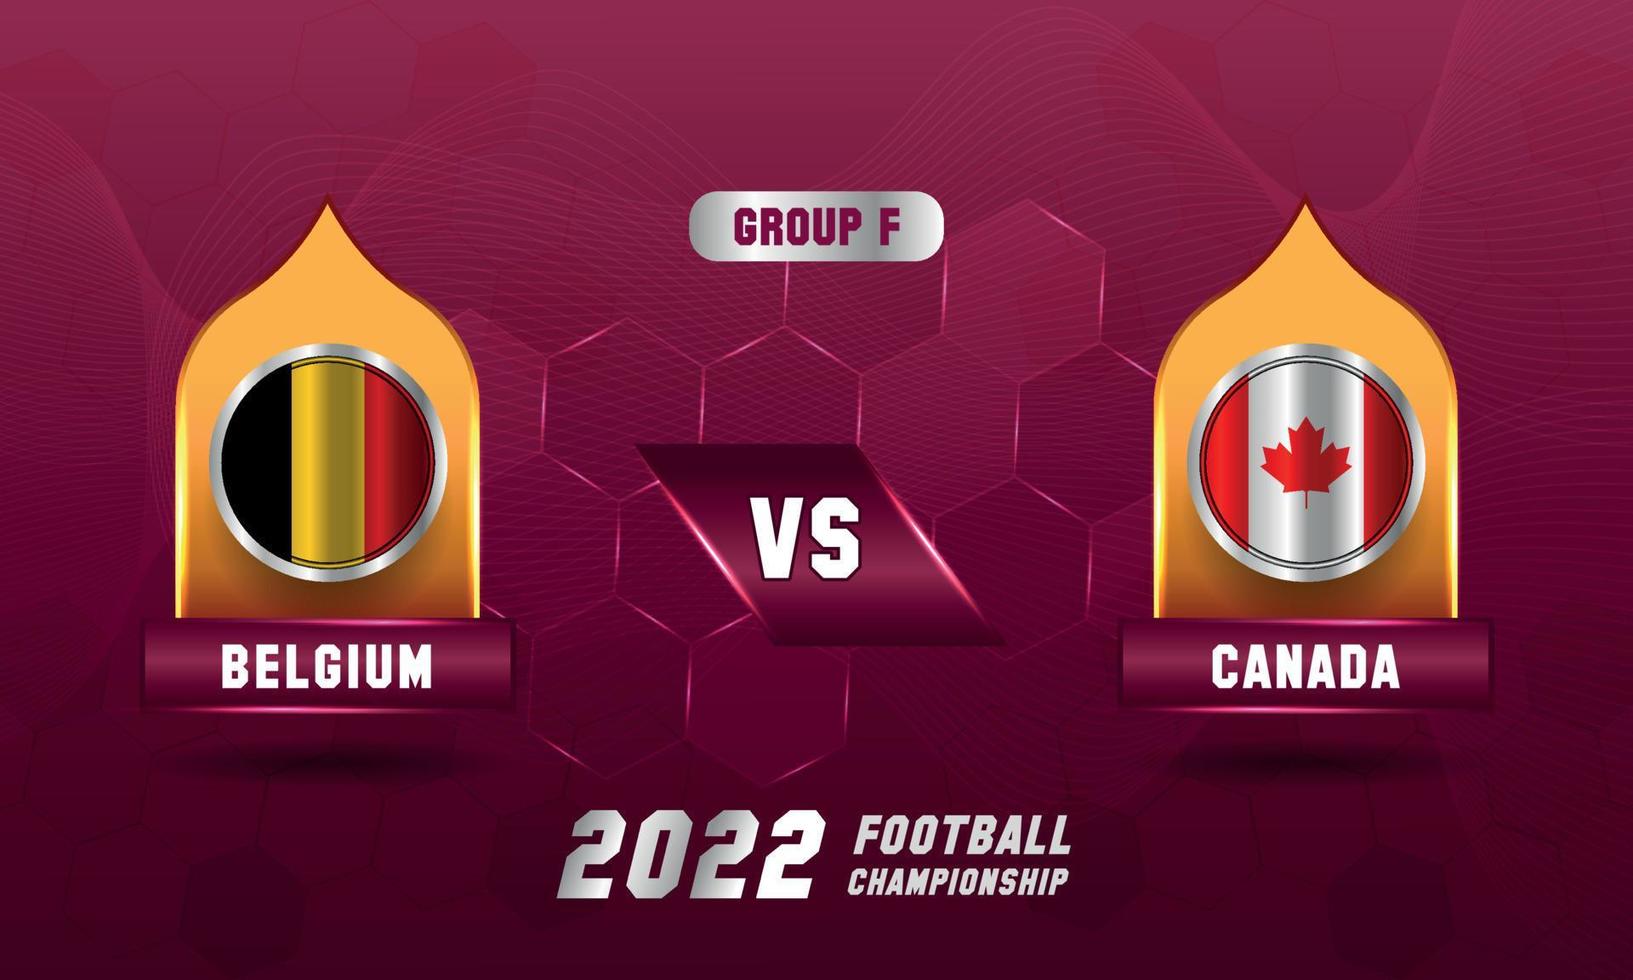 qatar voetbal wereld kop 2022 belgie vs Canada bij elkaar passen vector